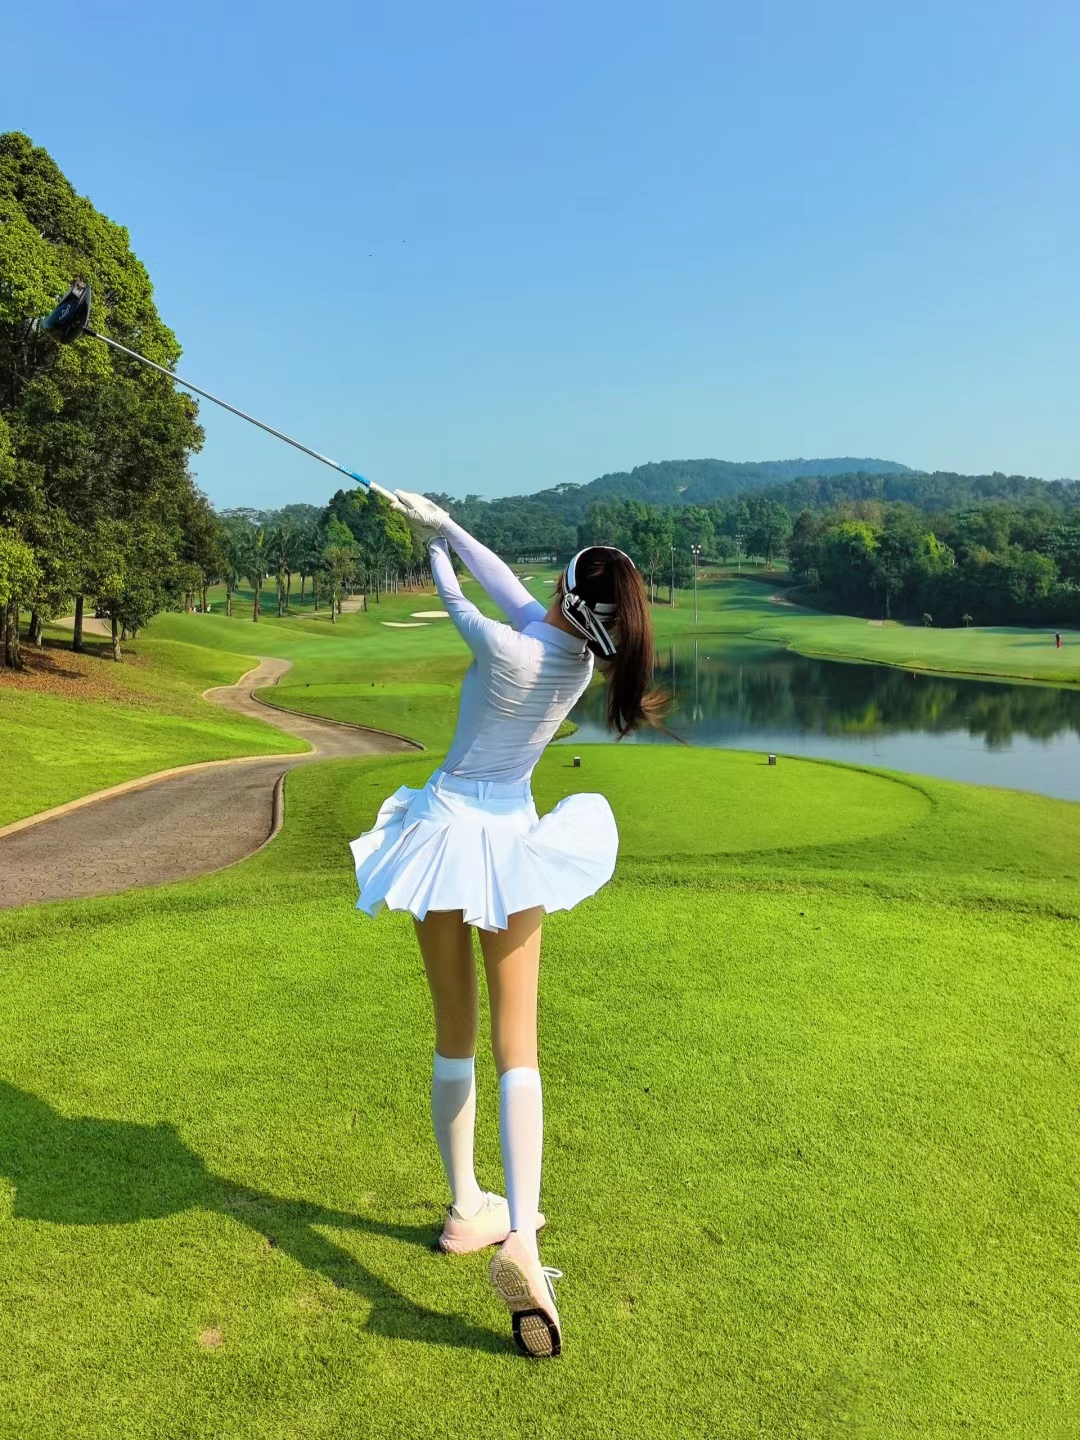 高尔夫球场上的美女,身姿优雅,动作流畅